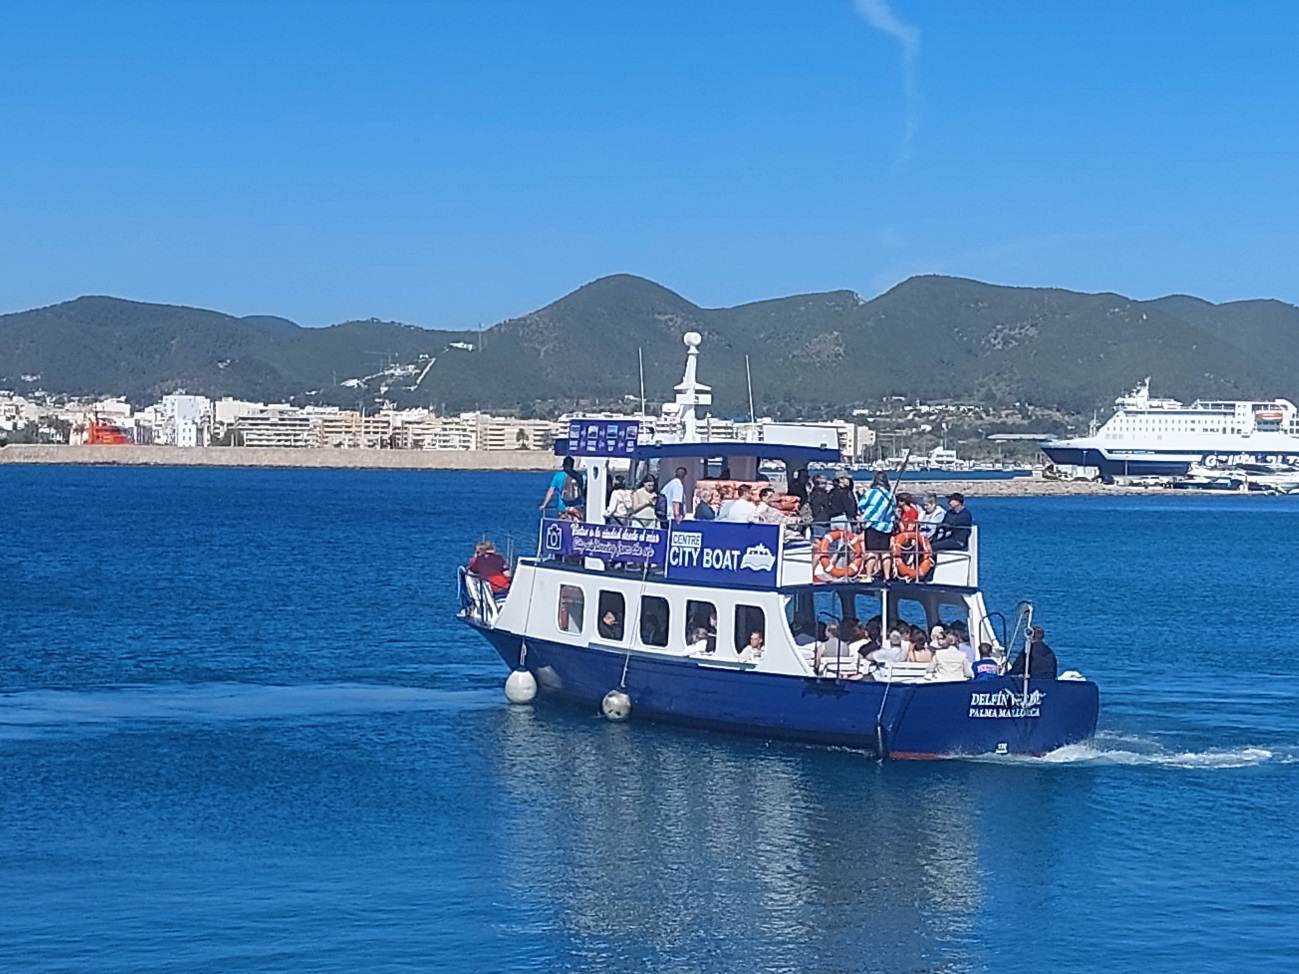 19.000 cruceristas utilizan el servicio de transporte marítimo City Boat en el puerto de Eivissa en tres meses